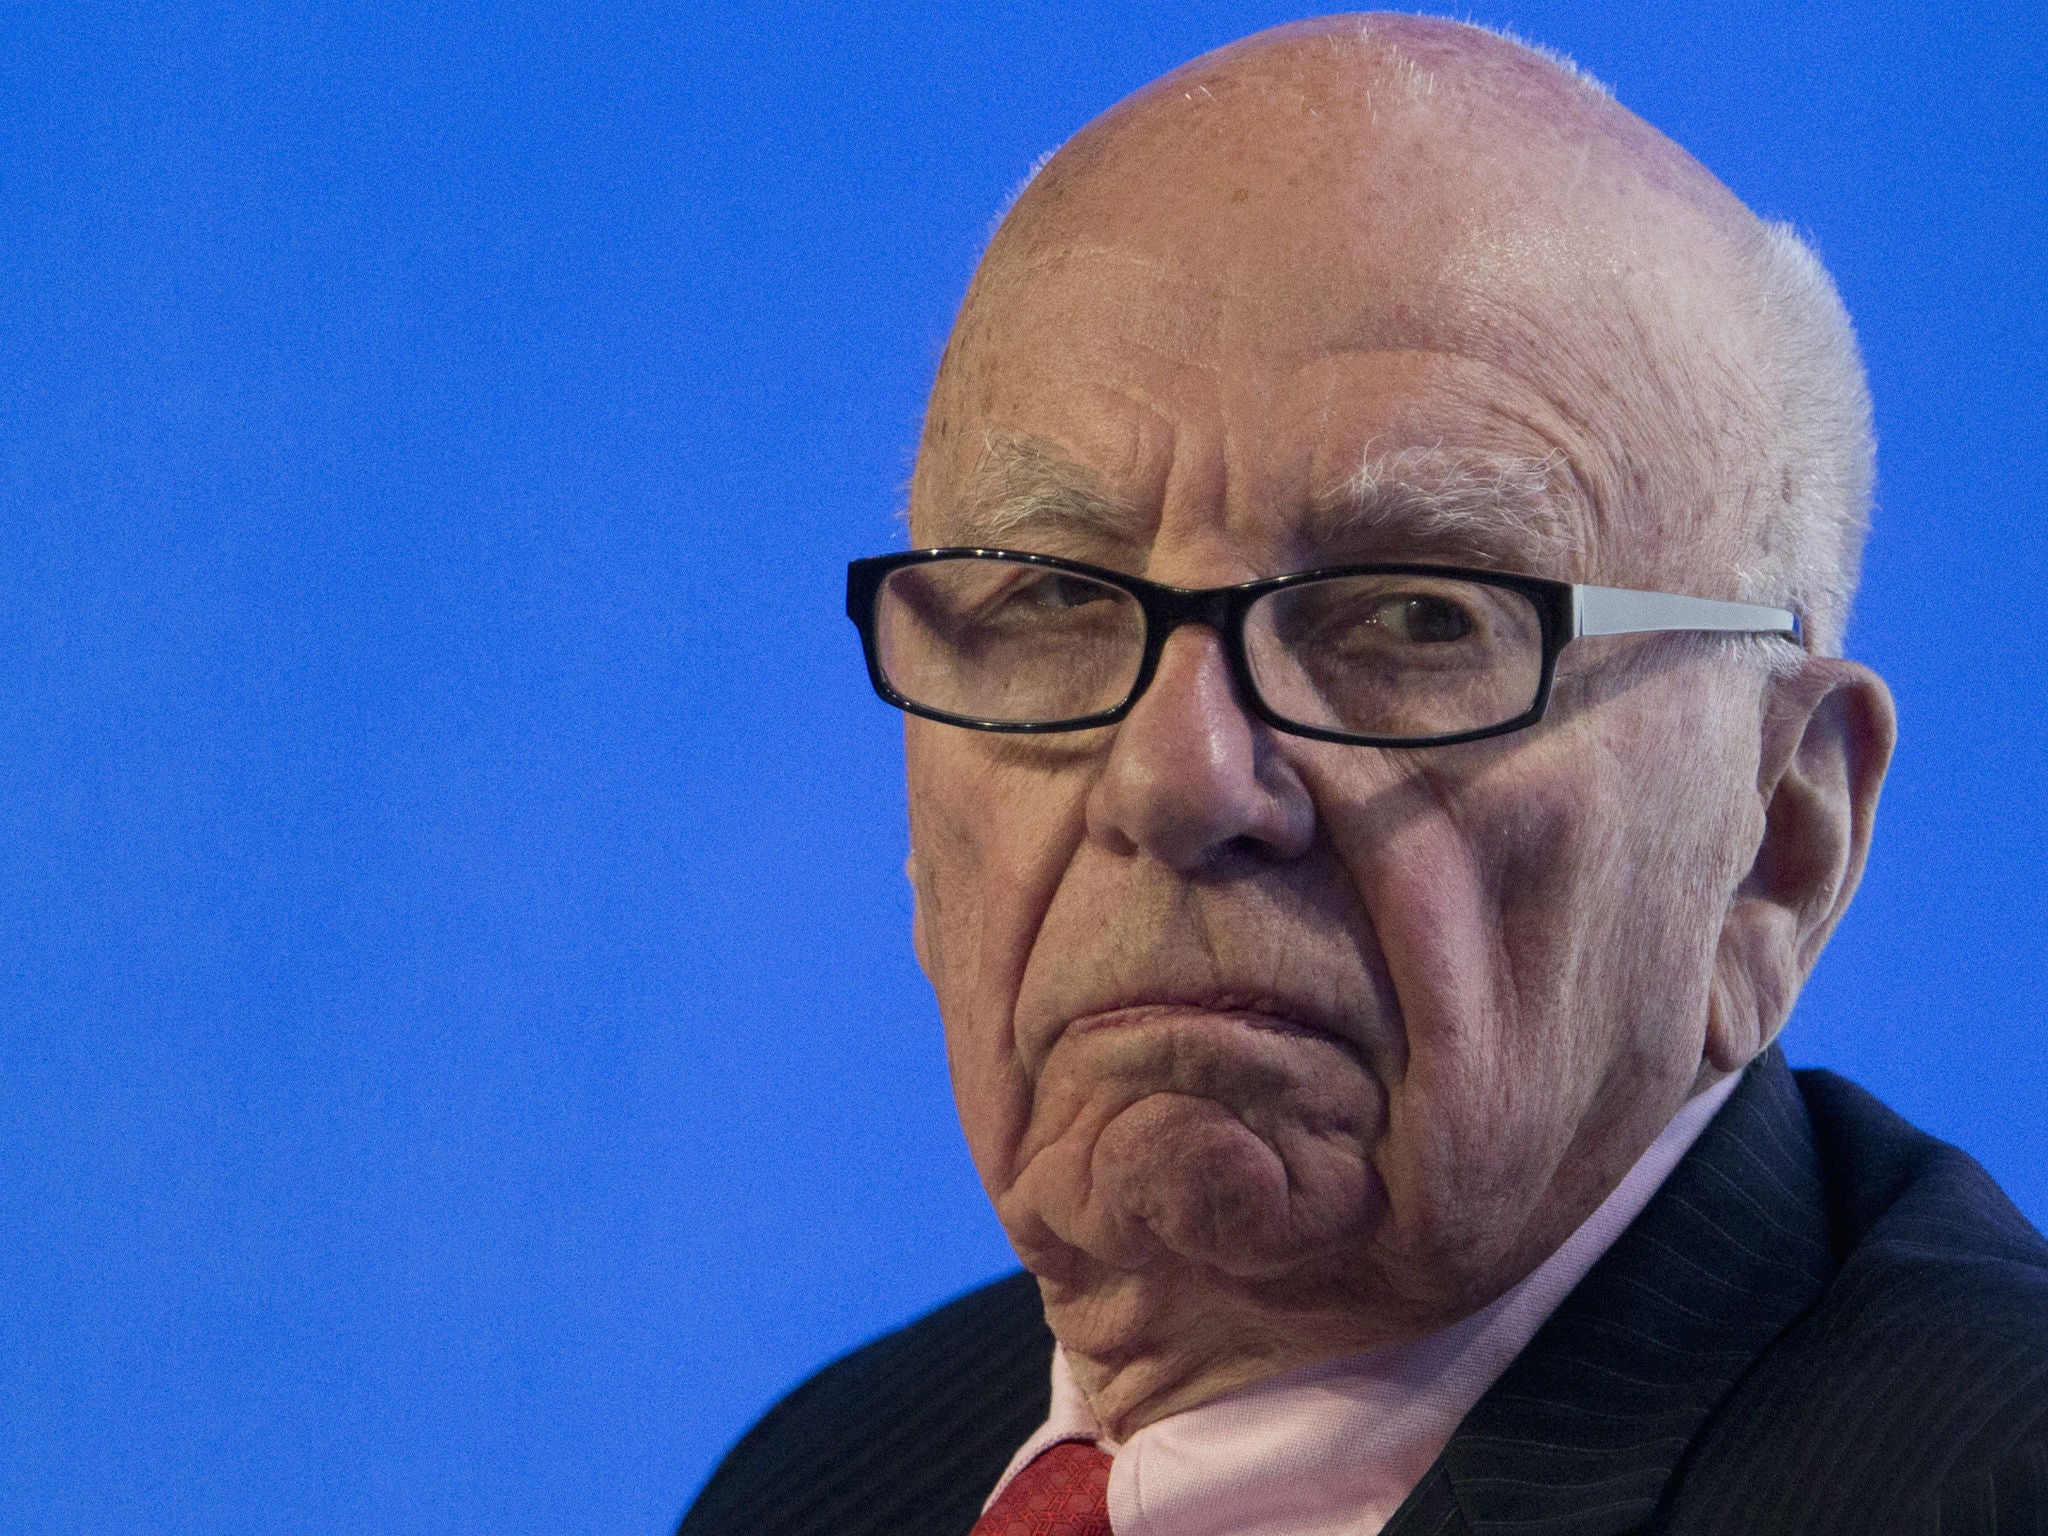 Rupert Murdoch, owner of News Corp